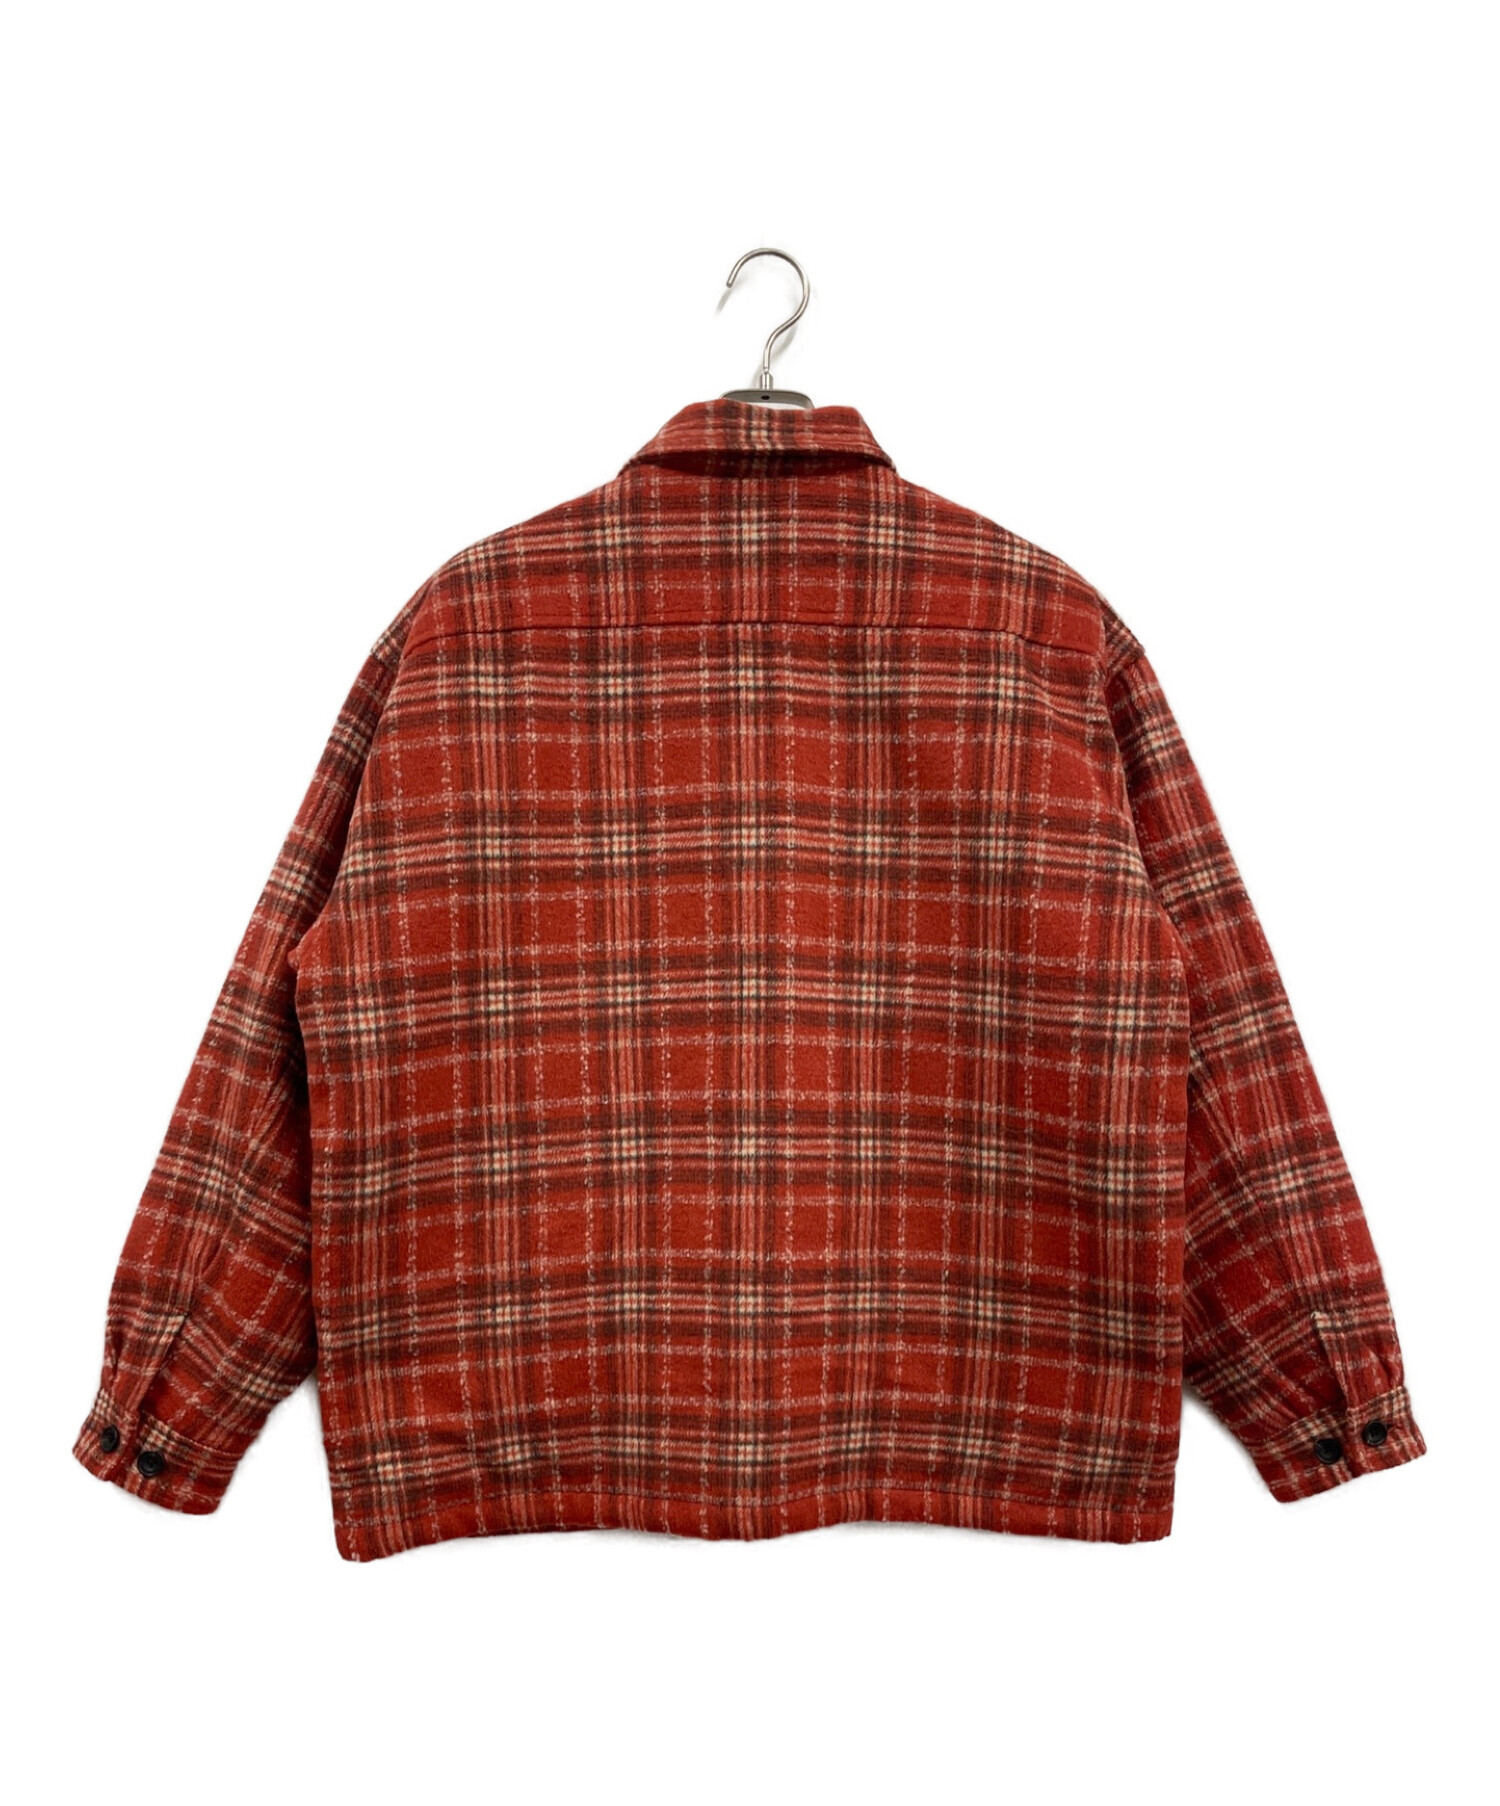 X-LARGE (エクストララージ) 中綿チェックジャケット / TWEED CHECK Jacket レッド サイズ:M